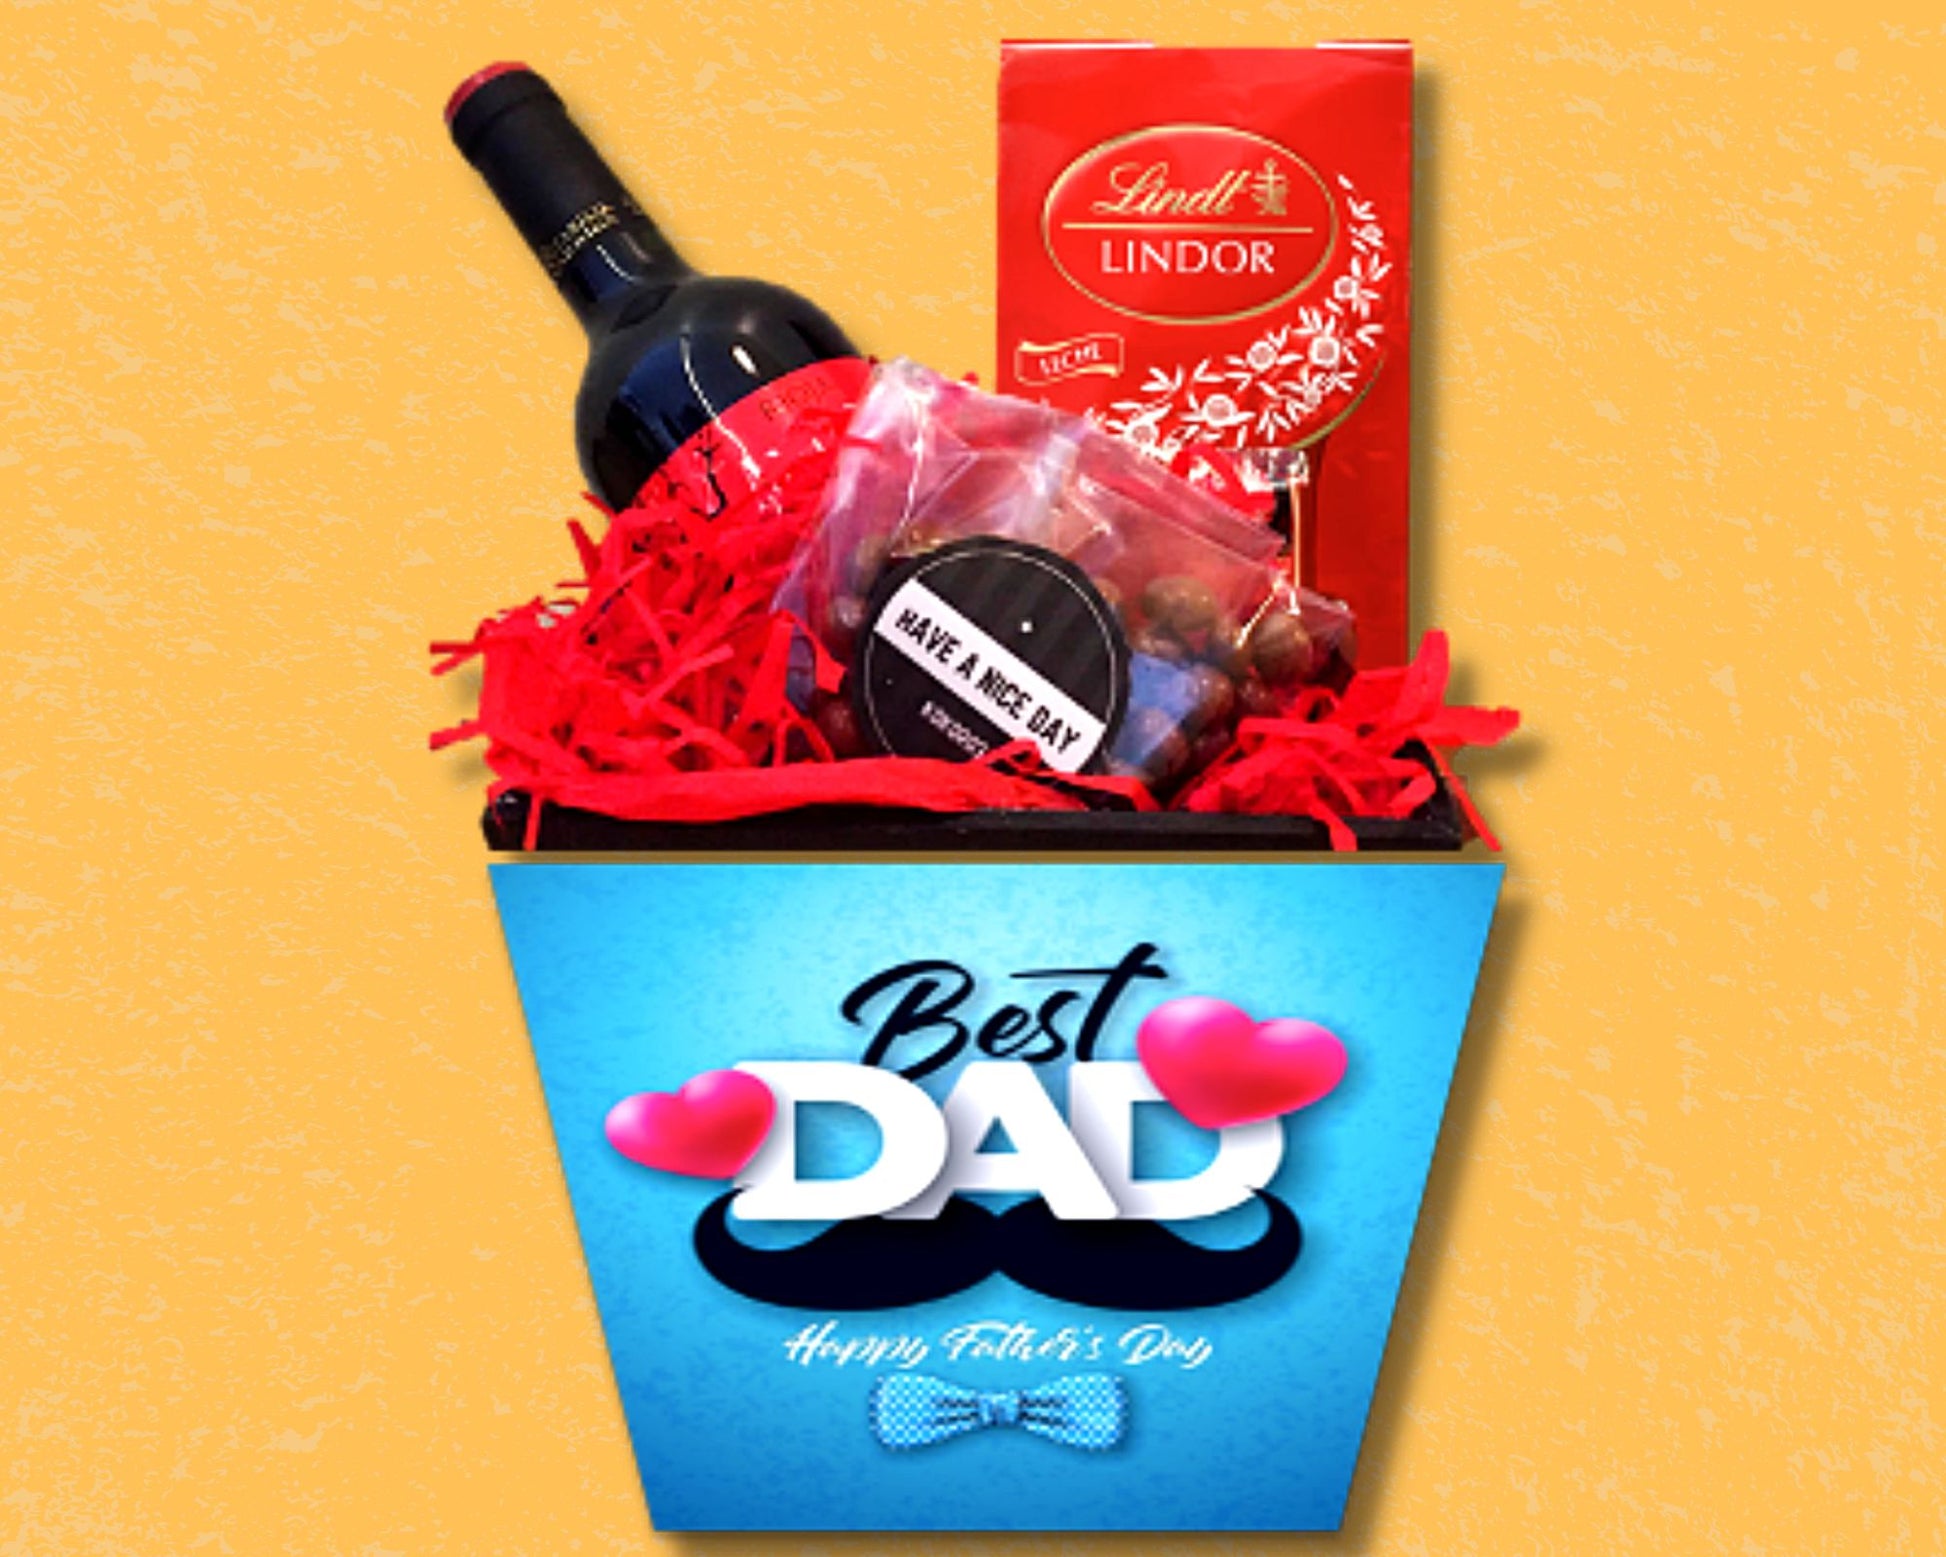 box con vino chocolates y pasitas con chocolate para dia del padre